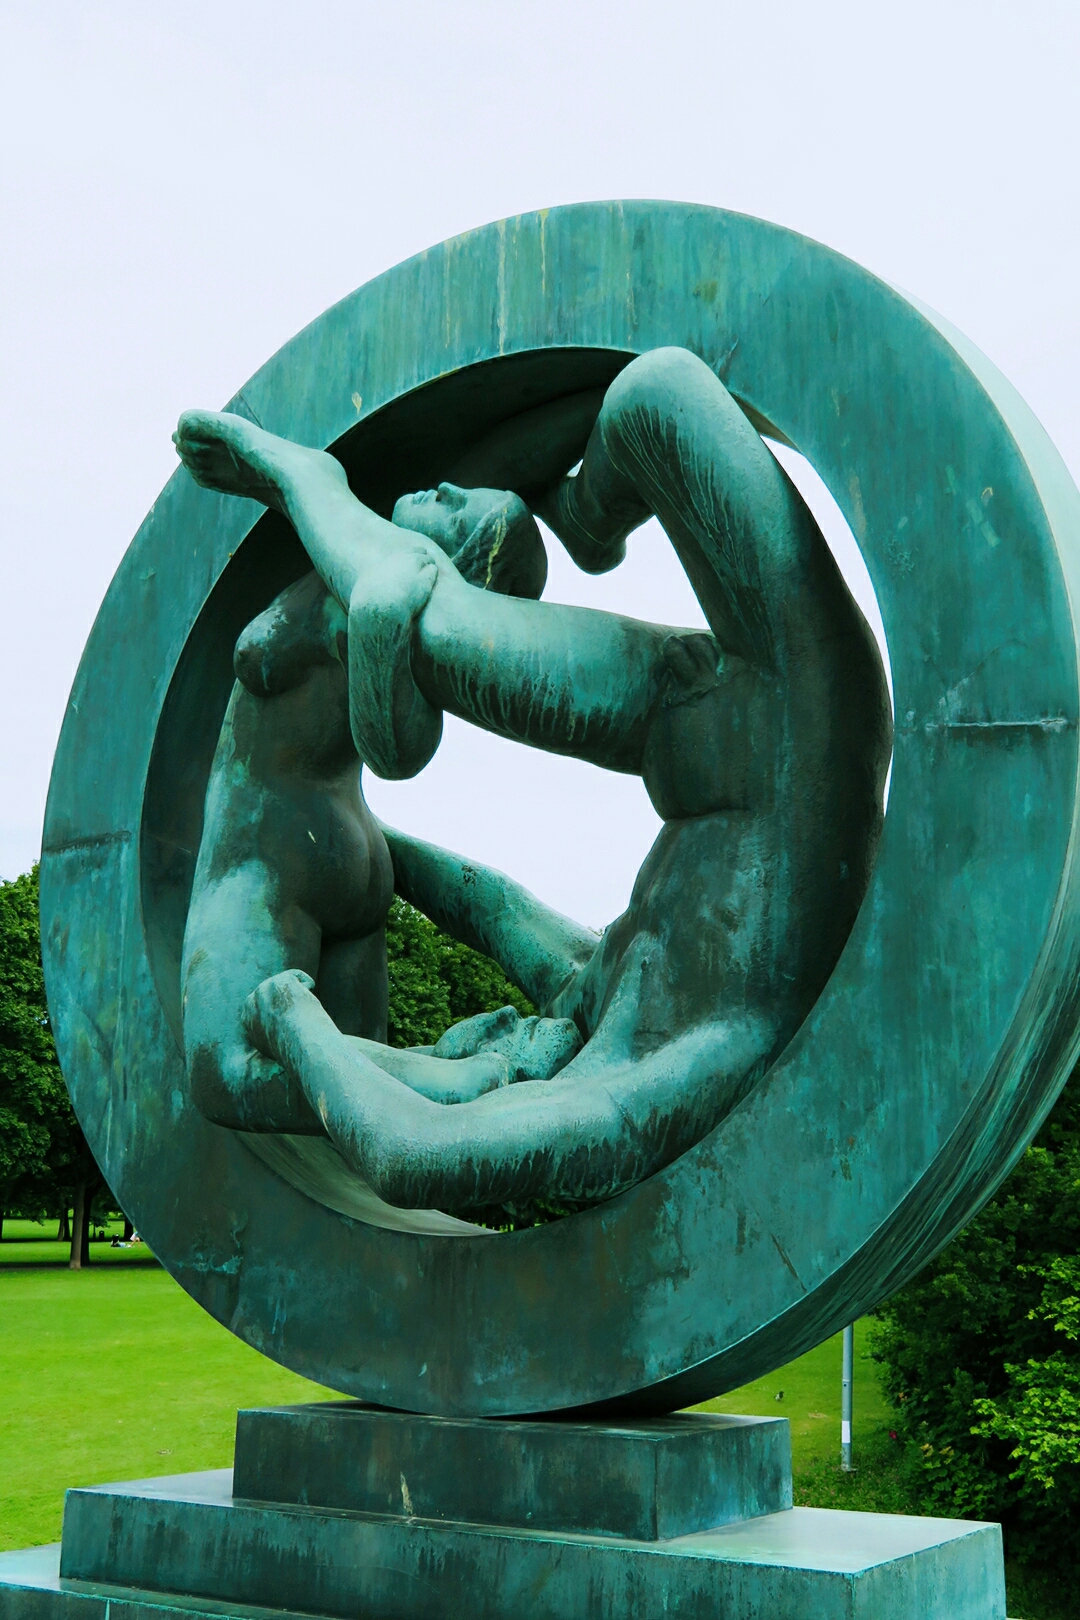 挪威雕塑家古斯塔夫,维格兰前后30年时间创作完成的一组生命礼赞